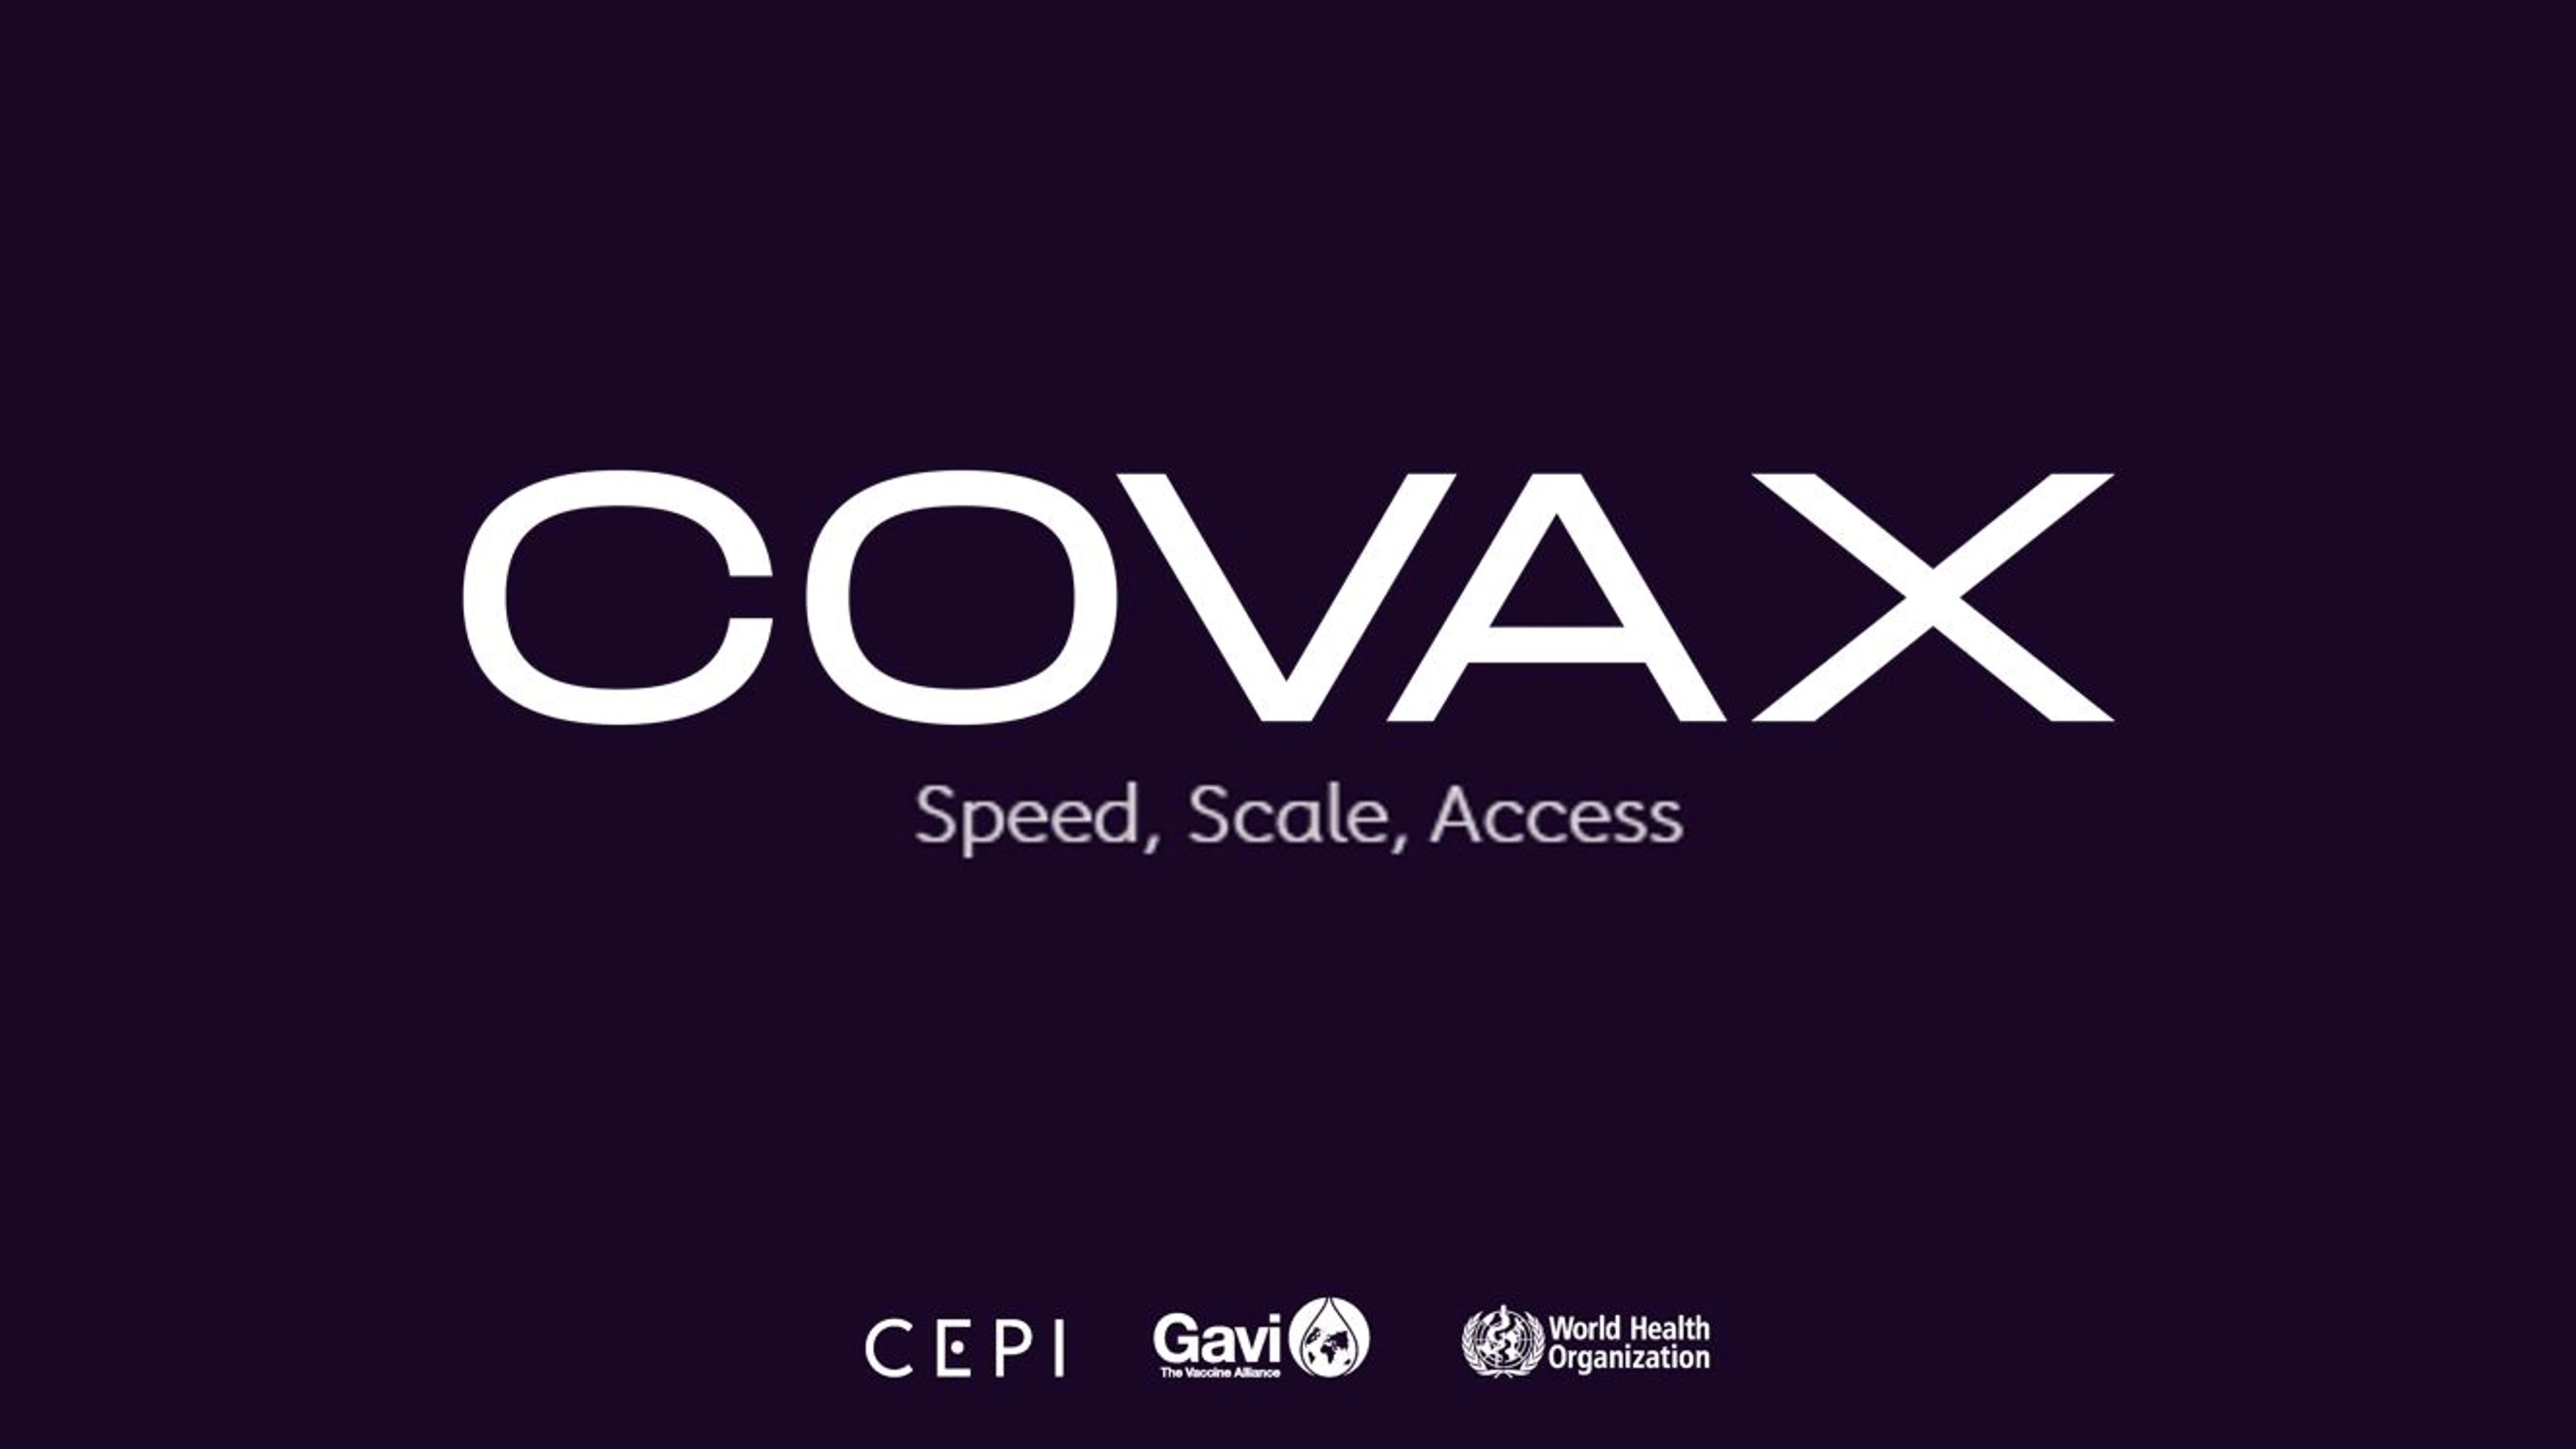 COVAX: CEPI's response to COVID-19